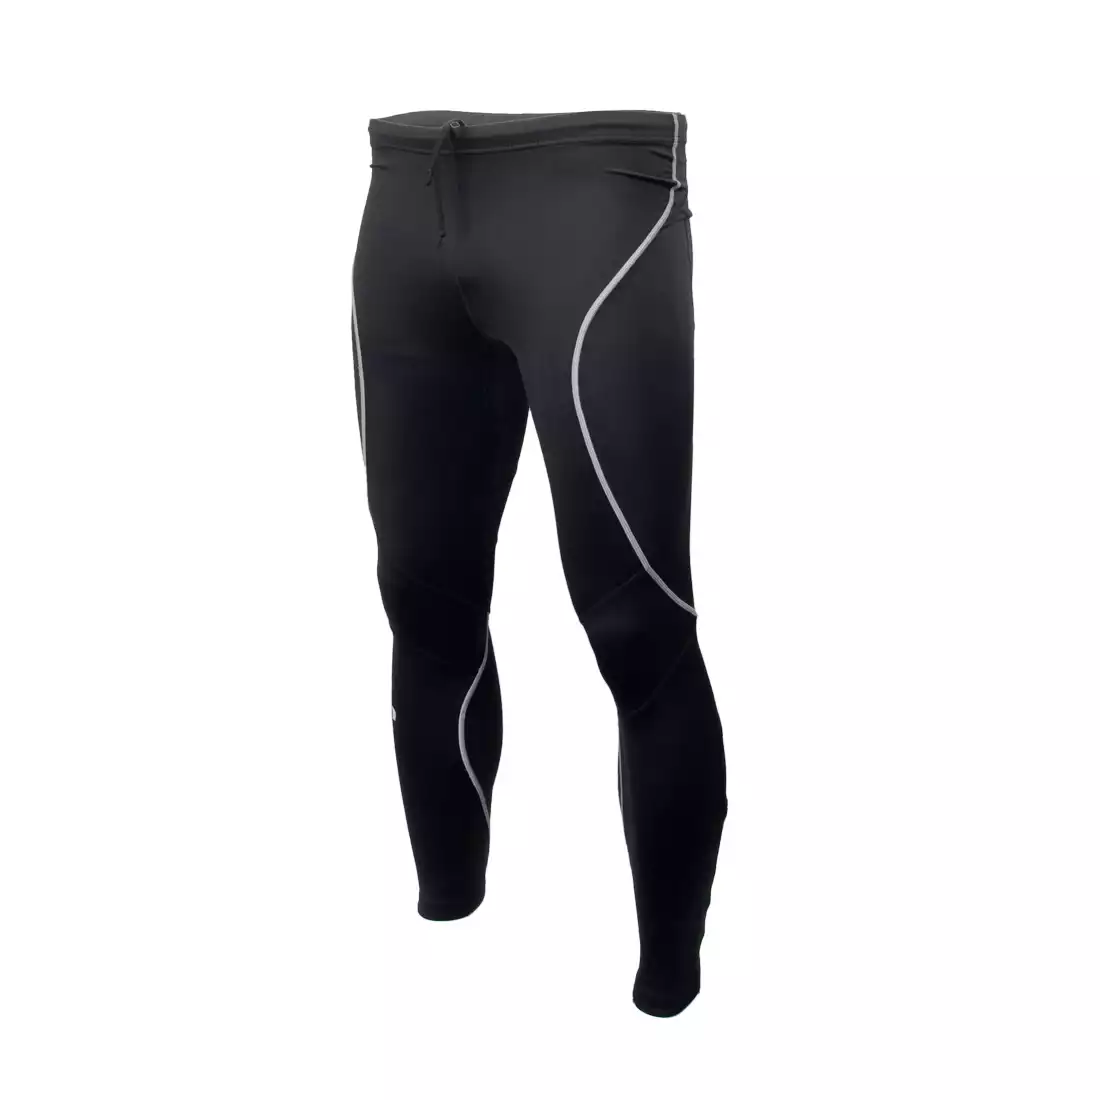 NEWLINE ICONIC POWER TIGHTS - męskie spodnie do biegania 11446-060